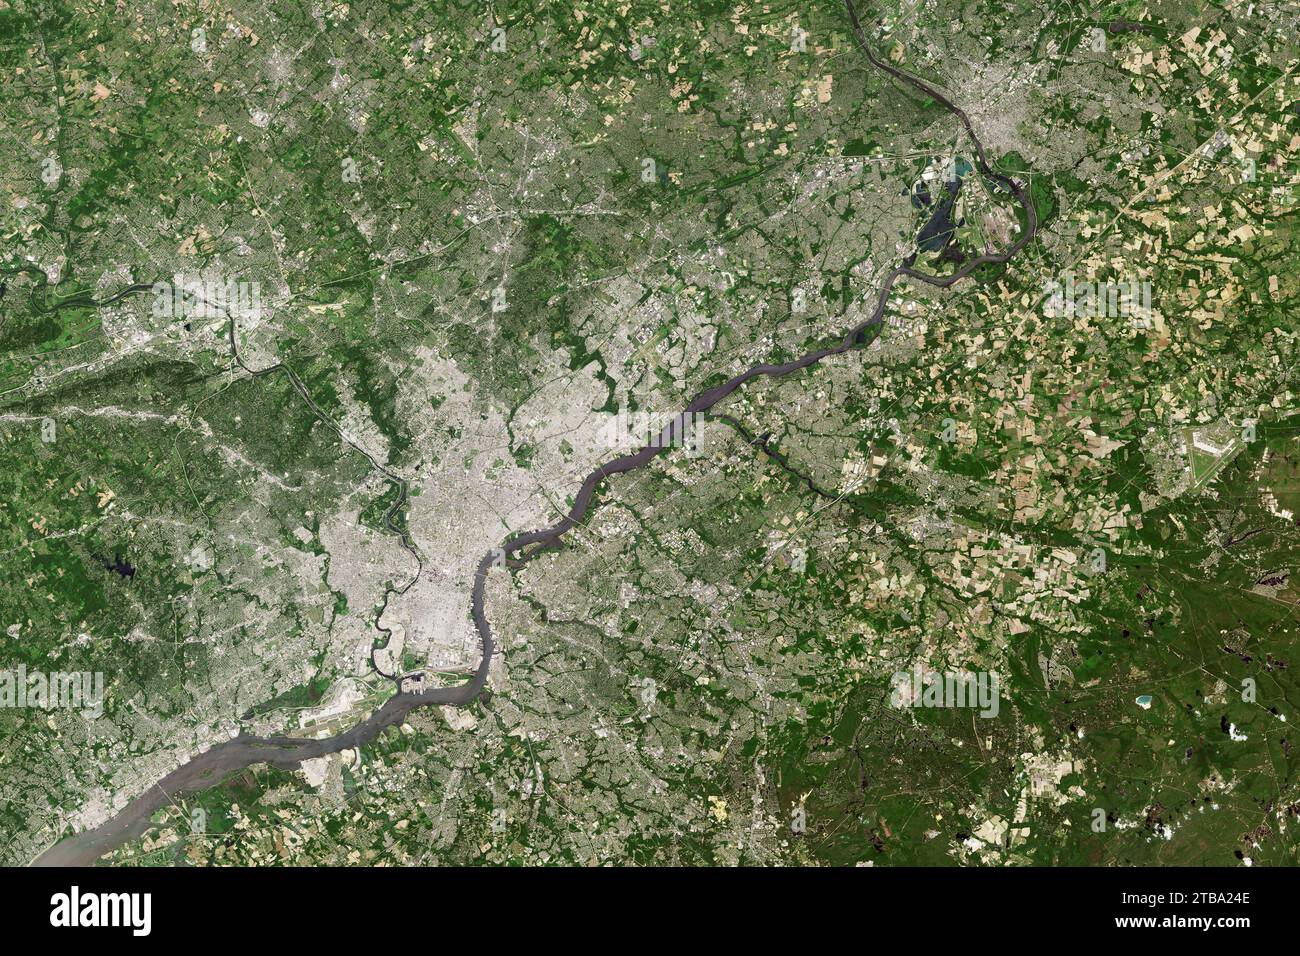 Vue satellite couleur naturelle de Philadelphie, Pennsylvanie et de la région environnante. Banque D'Images